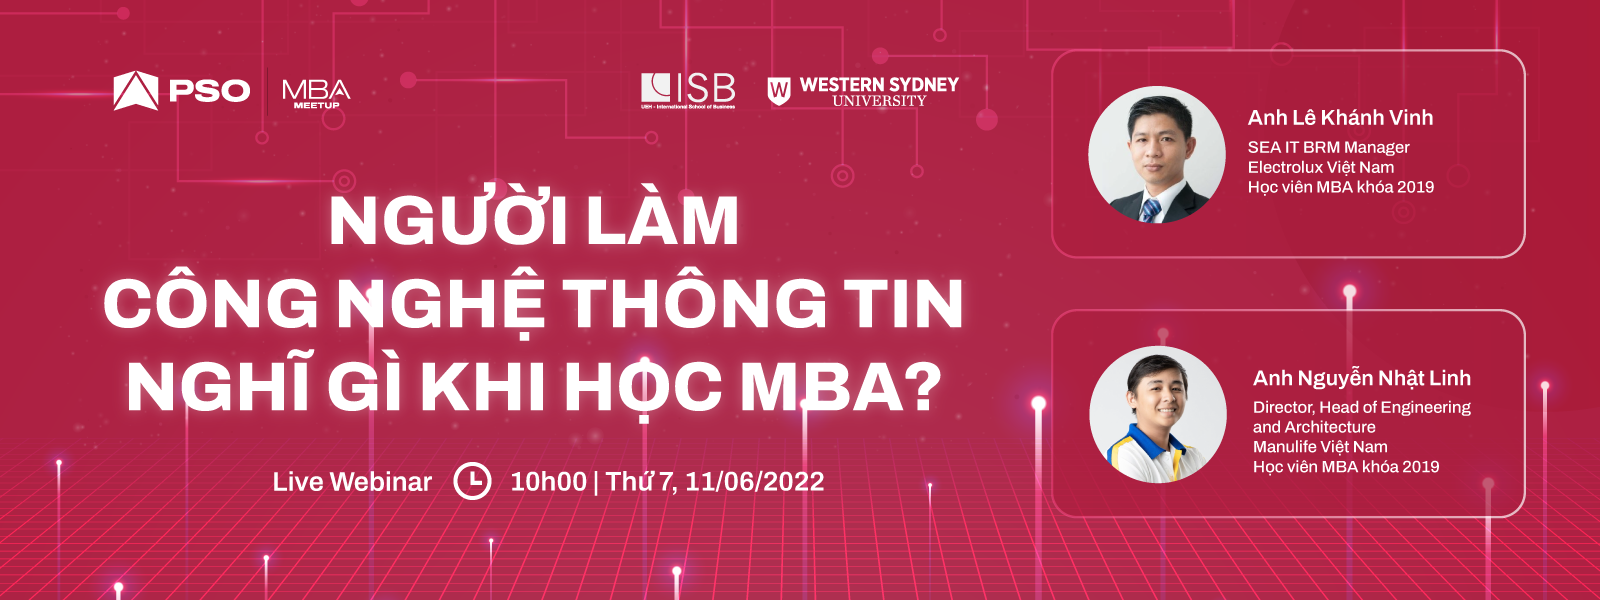 MBA Meetup: Người làm Công nghệ thông tin nghĩ gì khi học MBA?